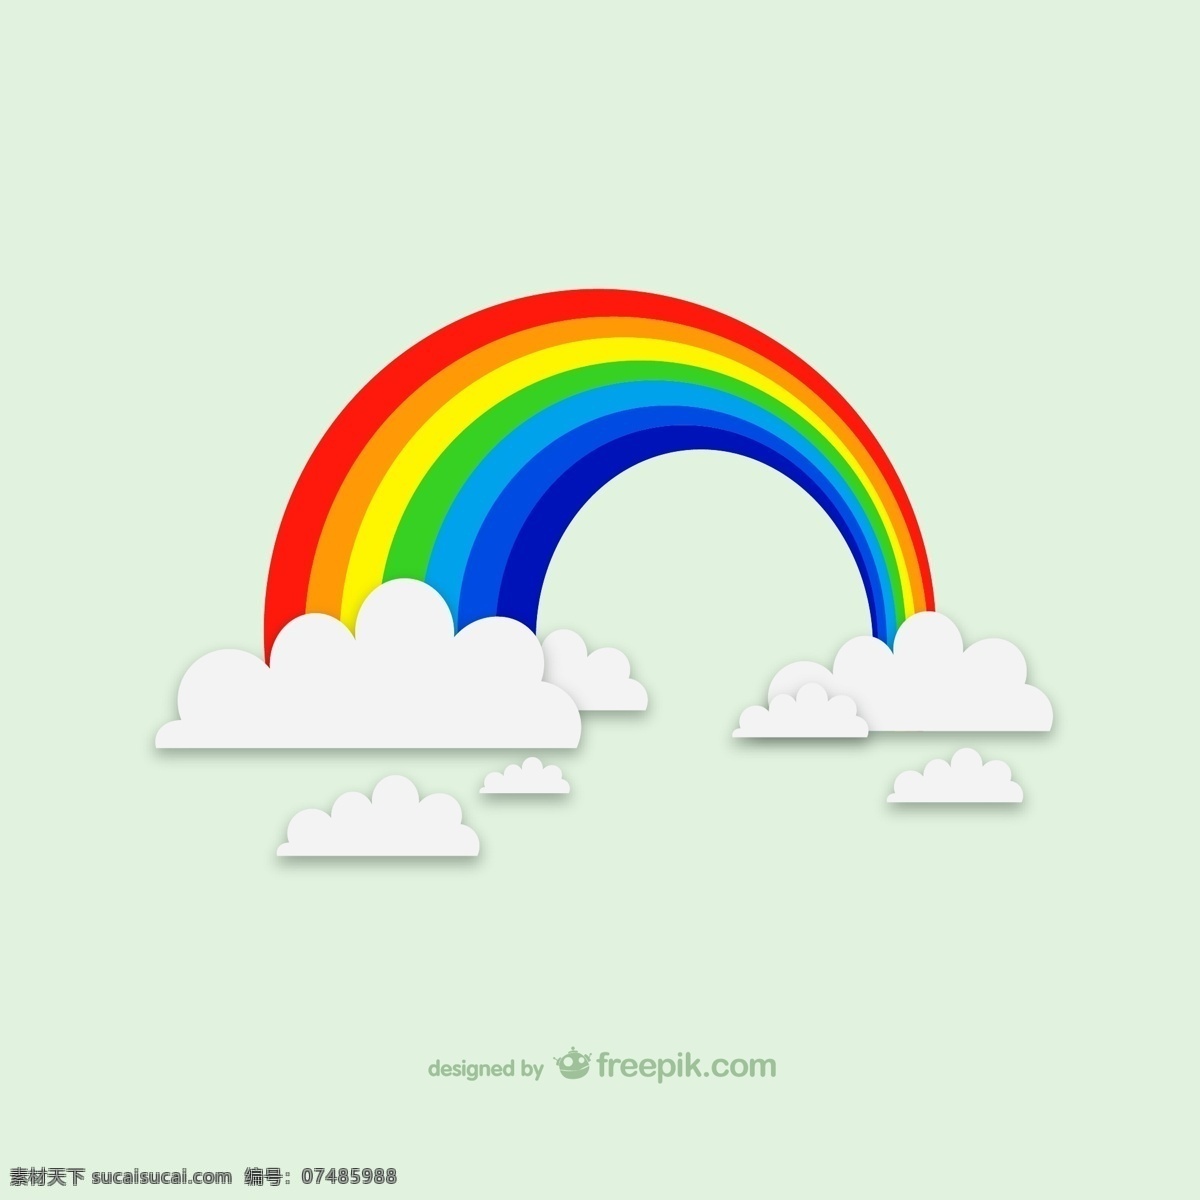 精致 彩虹 云朵 背景 矢量 卡通 矢量素材 动漫动画 风景漫画